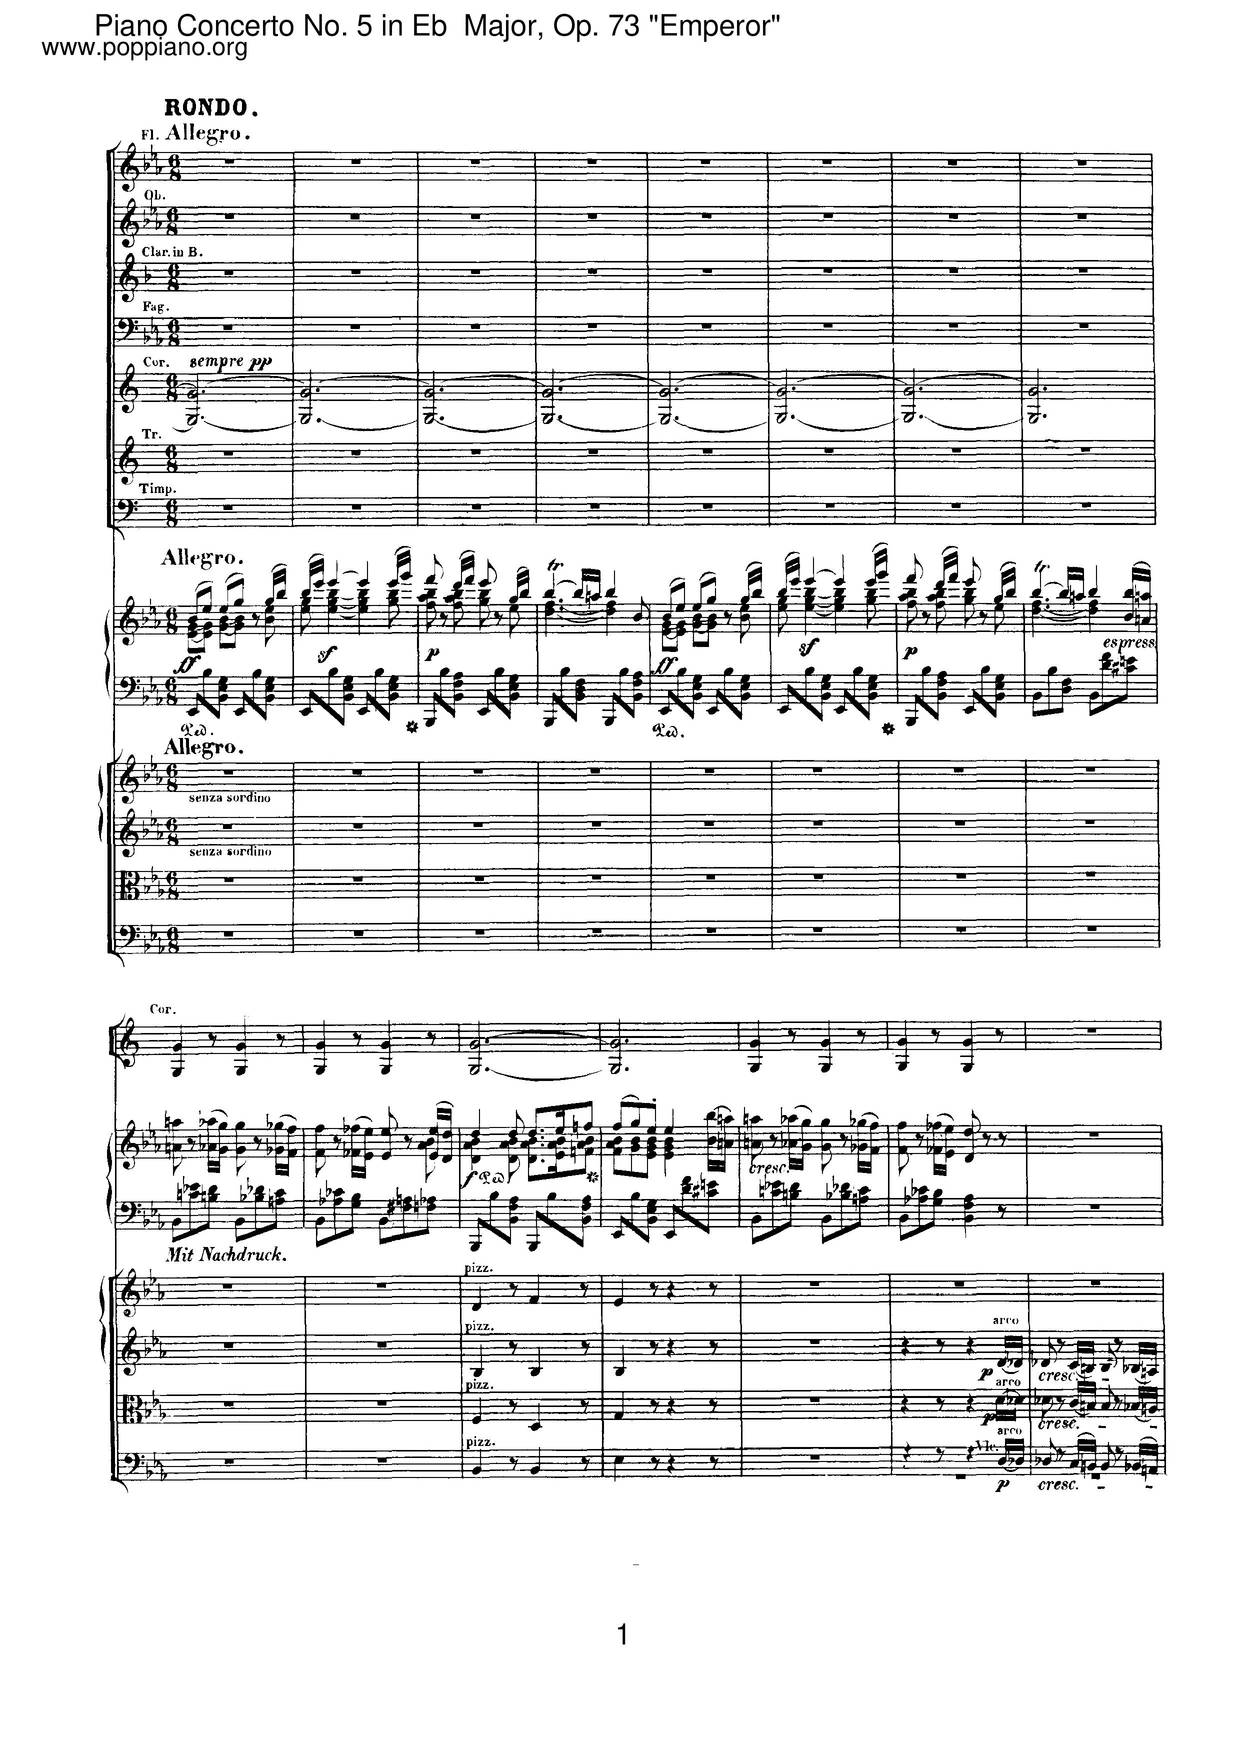 Piano Concerto No. 5 in E-Flat Major, Op. 73 Emperor: 2. Adagio un poco mosso琴譜